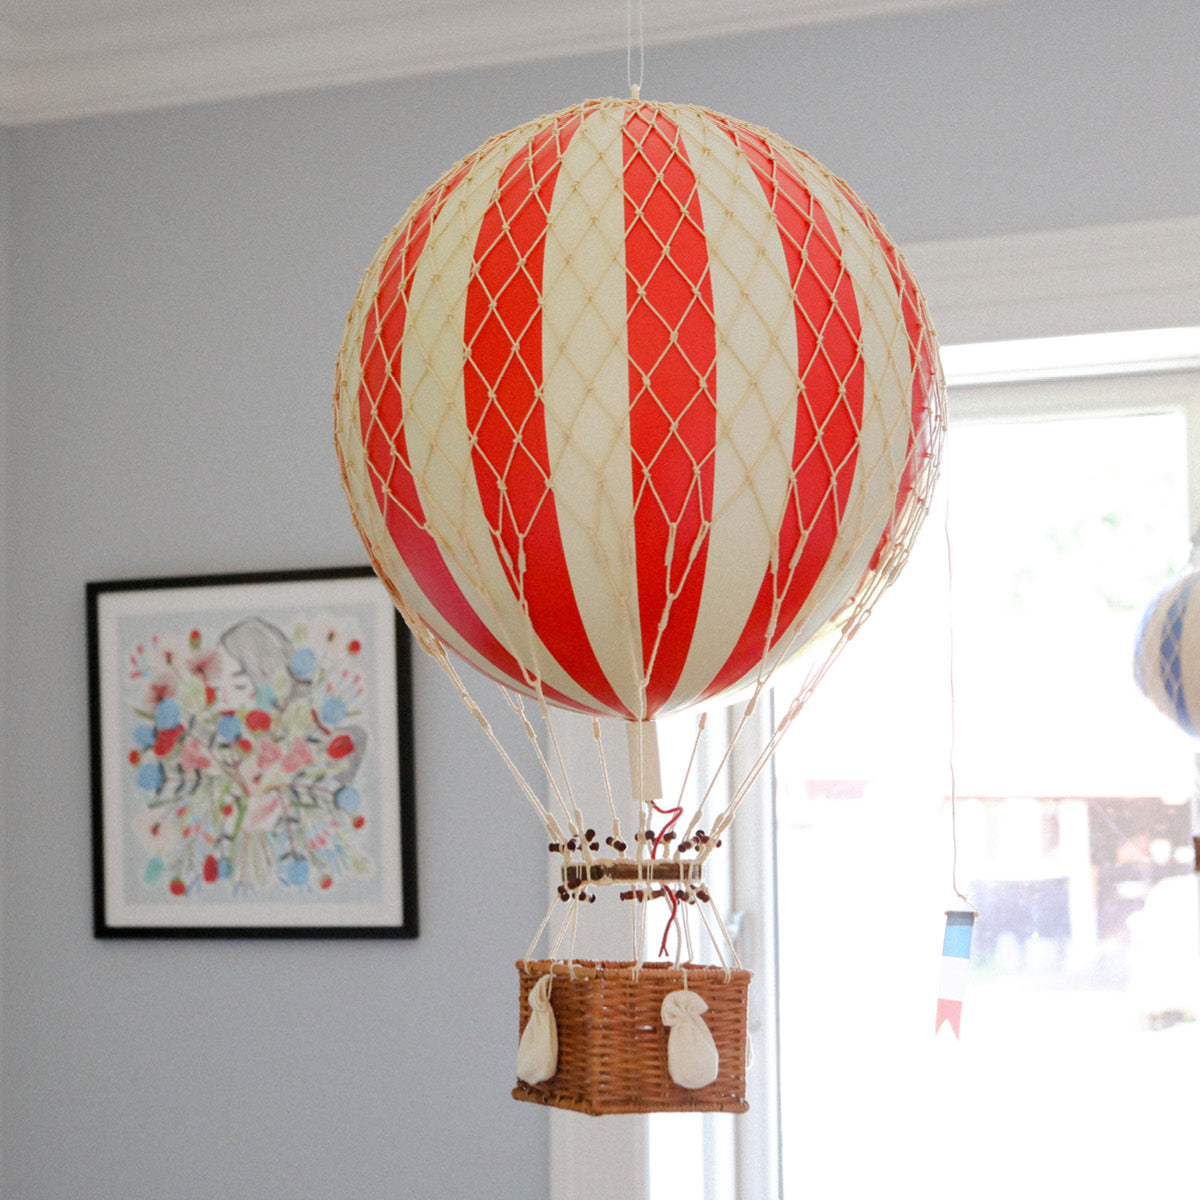 Comment faire voler un ballon sans hélium! Original ! flying baloon كيفية  صنع البالون الطائر 